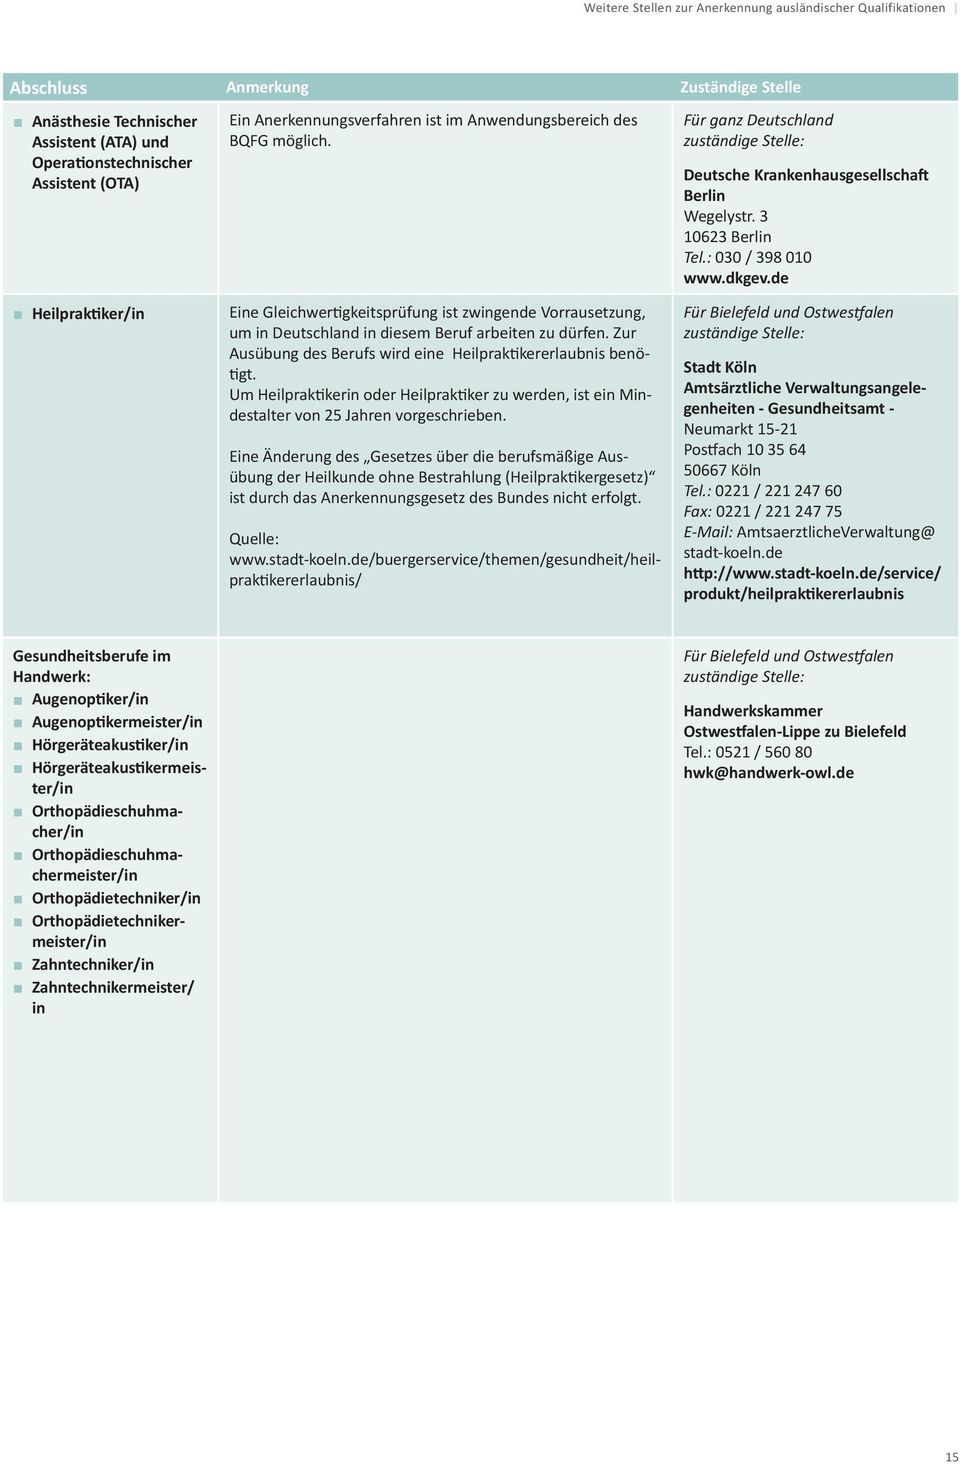 dkgev.de Heilpraktiker/in Eine Gleichwertigkeitsprüfung ist zwingende Vorrausetzung, um in Deutschland in diesem Beruf arbeiten zu dürfen.